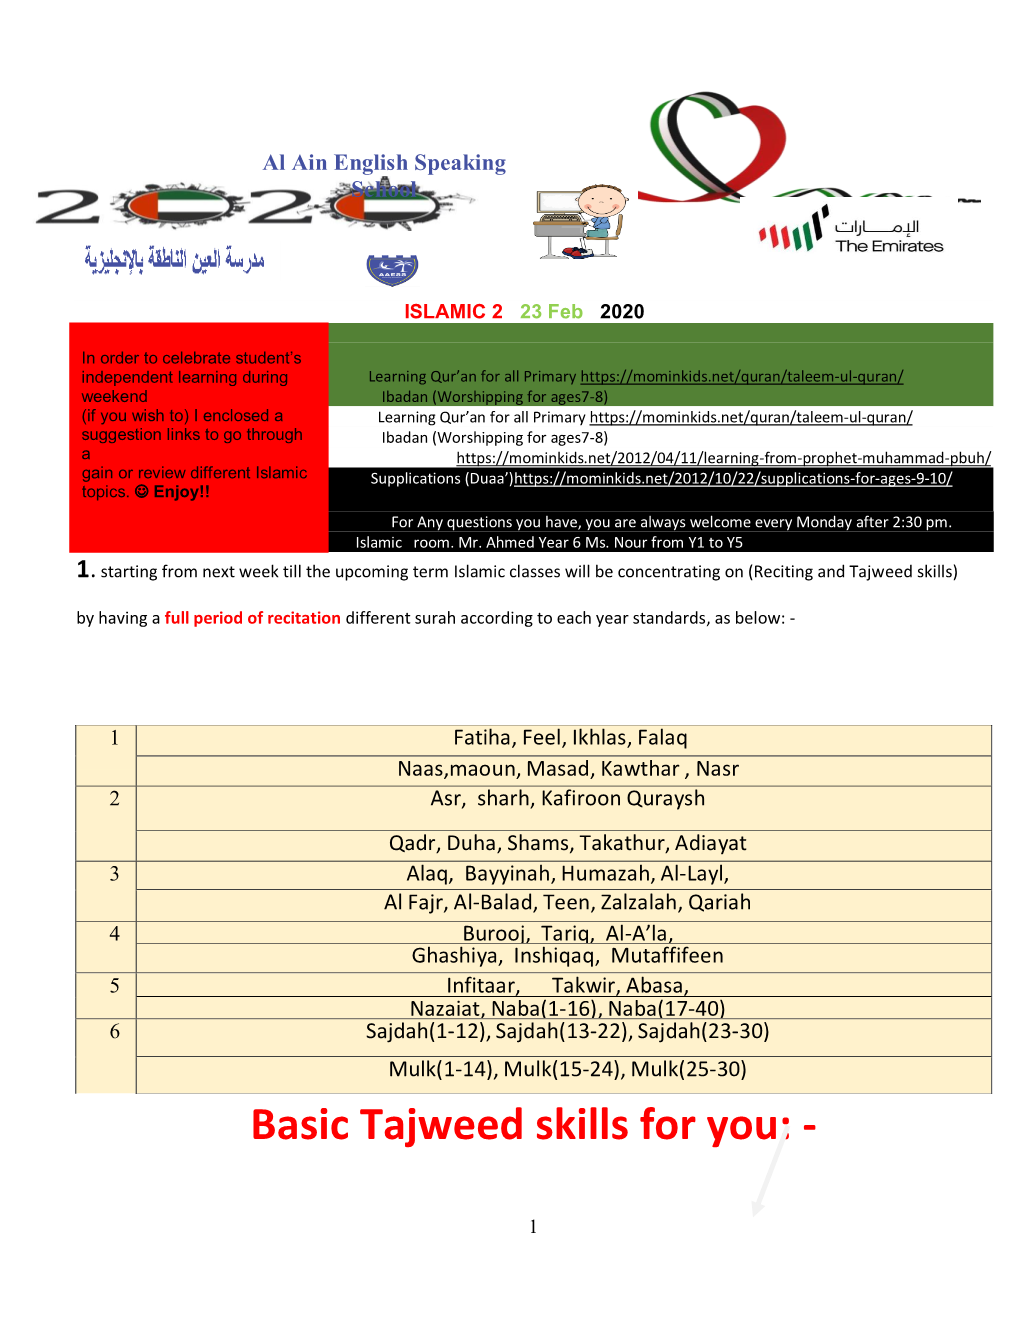 Basic Tajweed Skills for You: